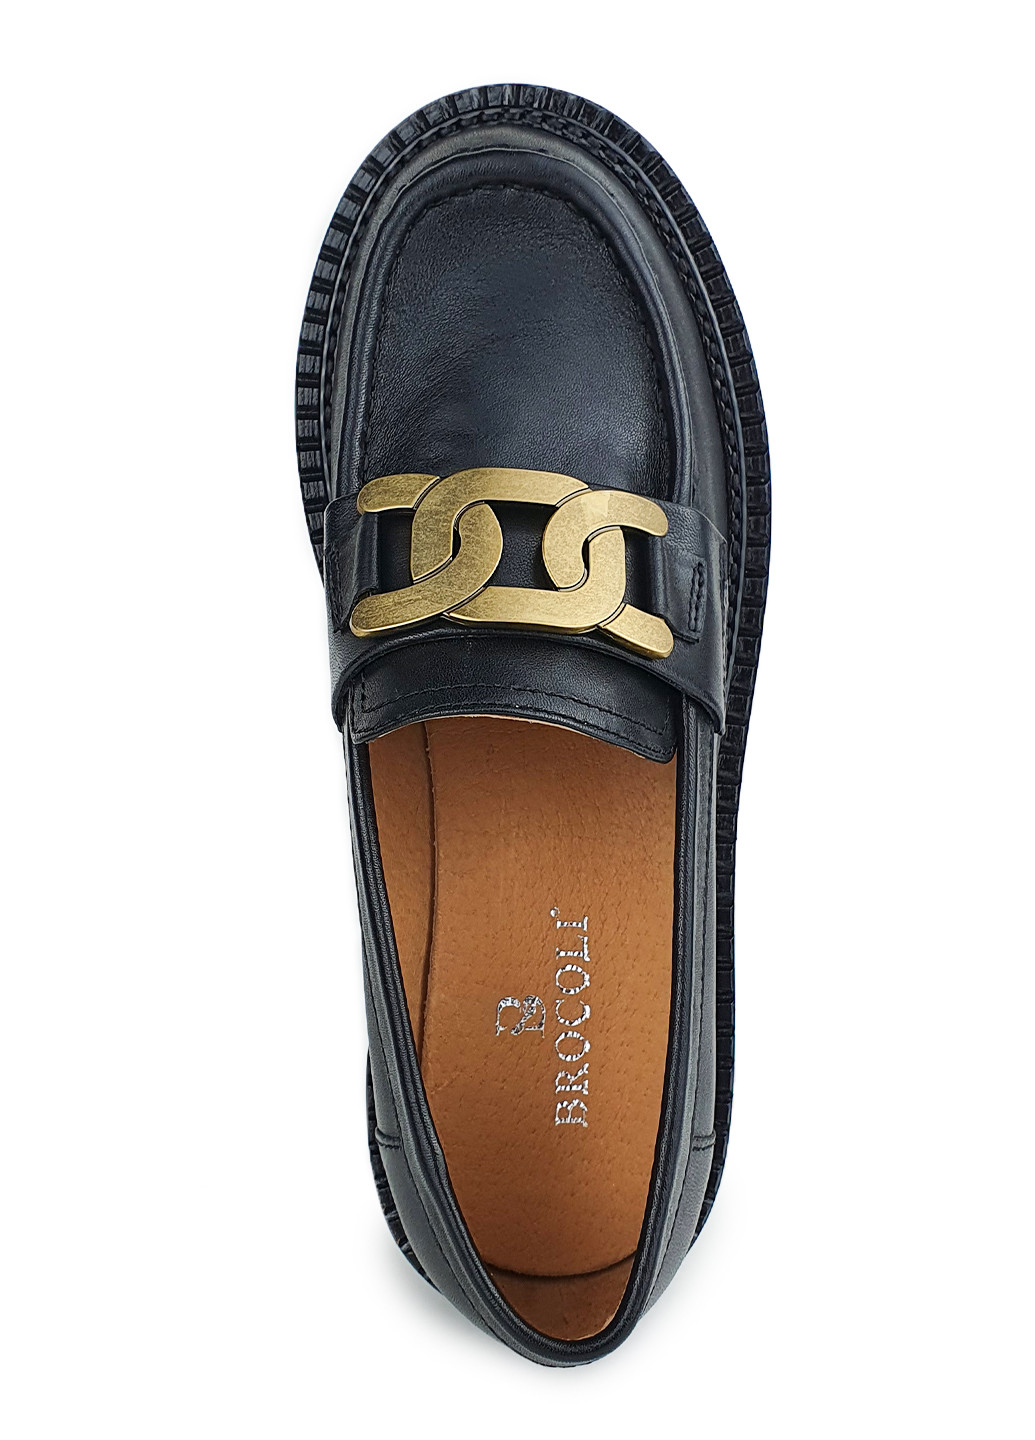 Женские туфли лоферы черного цвета на невысоком каблуке Brocoli